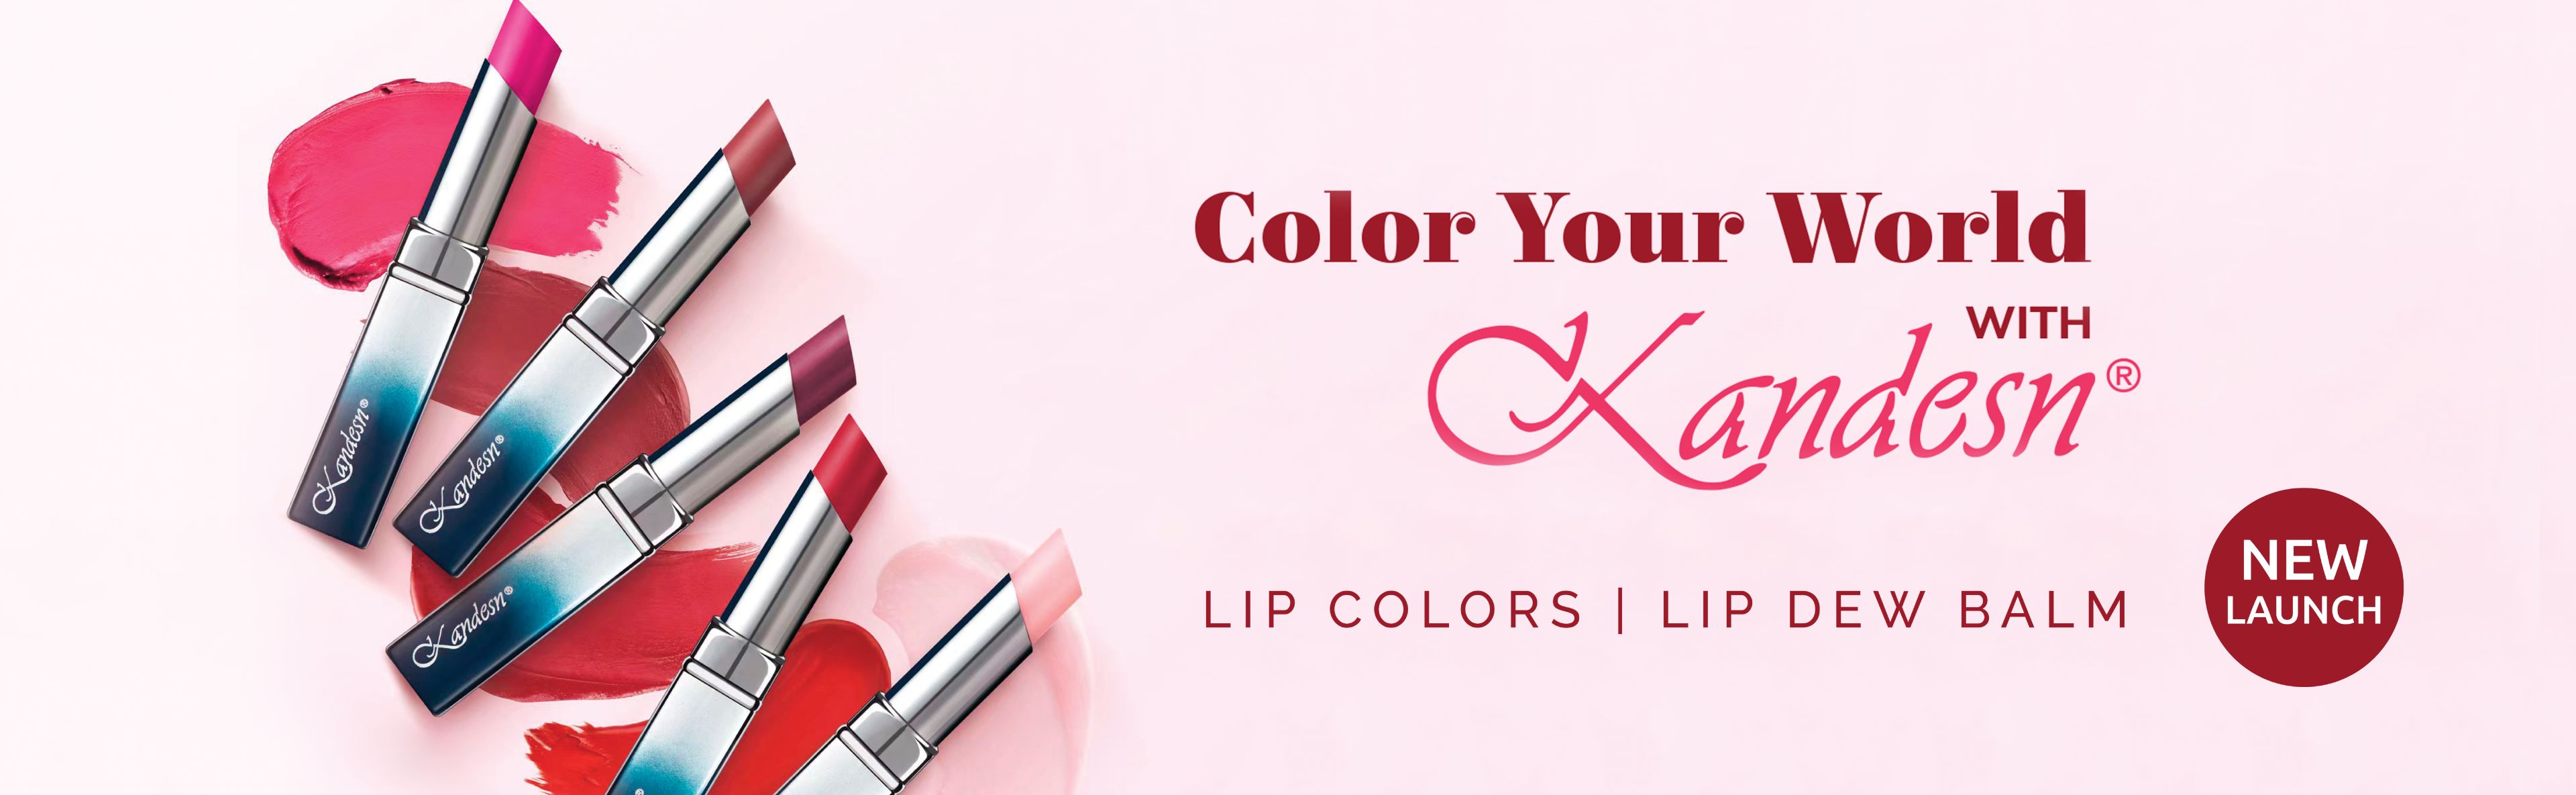 MY-Lip Color Launch - E